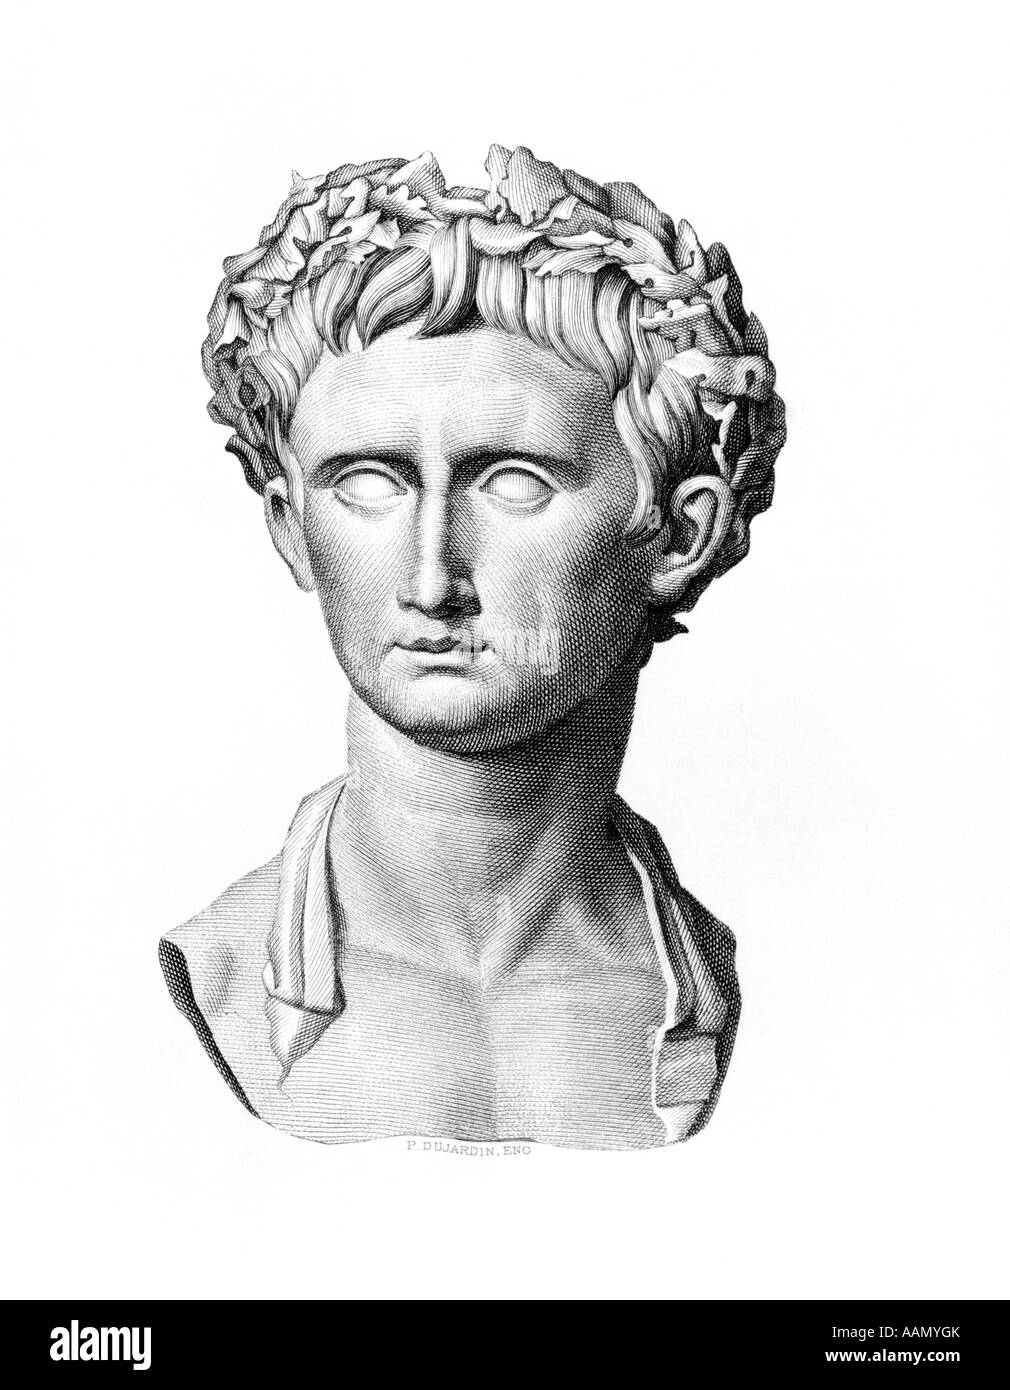 Buste PORTRAIT D'auguste premier empereur romain 63 à 14 C.-B. annonce nommé Octave César Auguste NEVEU DE JULES CÉSAR CESAR ROME Banque D'Images